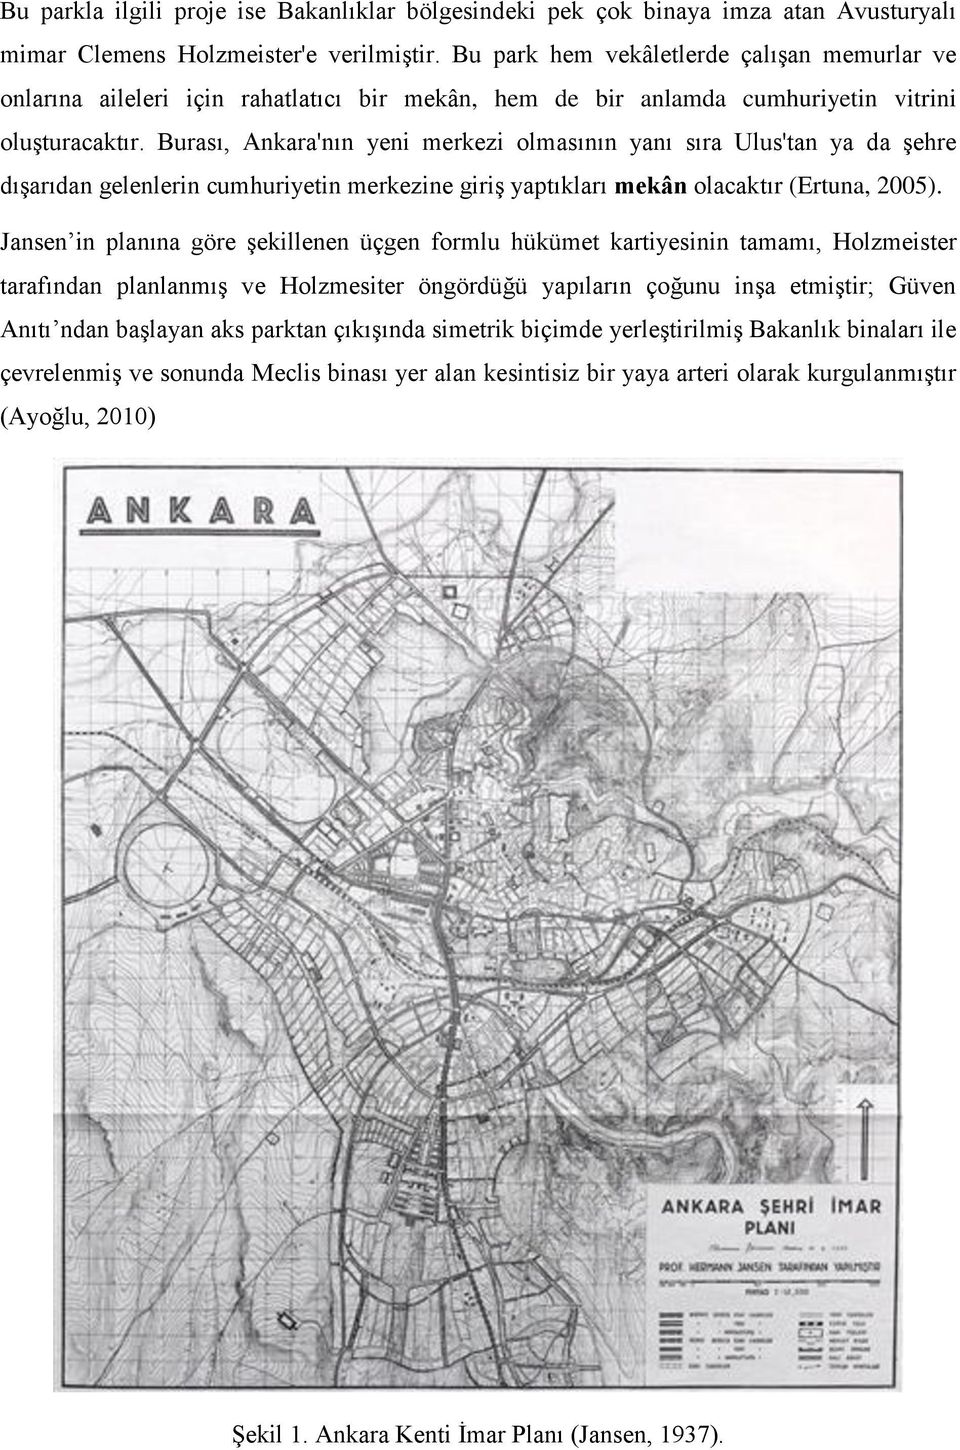 Burası, Ankara'nın yeni merkezi olmasının yanı sıra Ulus'tan ya da şehre dışarıdan gelenlerin cumhuriyetin merkezine giriş yaptıkları mekân olacaktır (Ertuna, 2005).